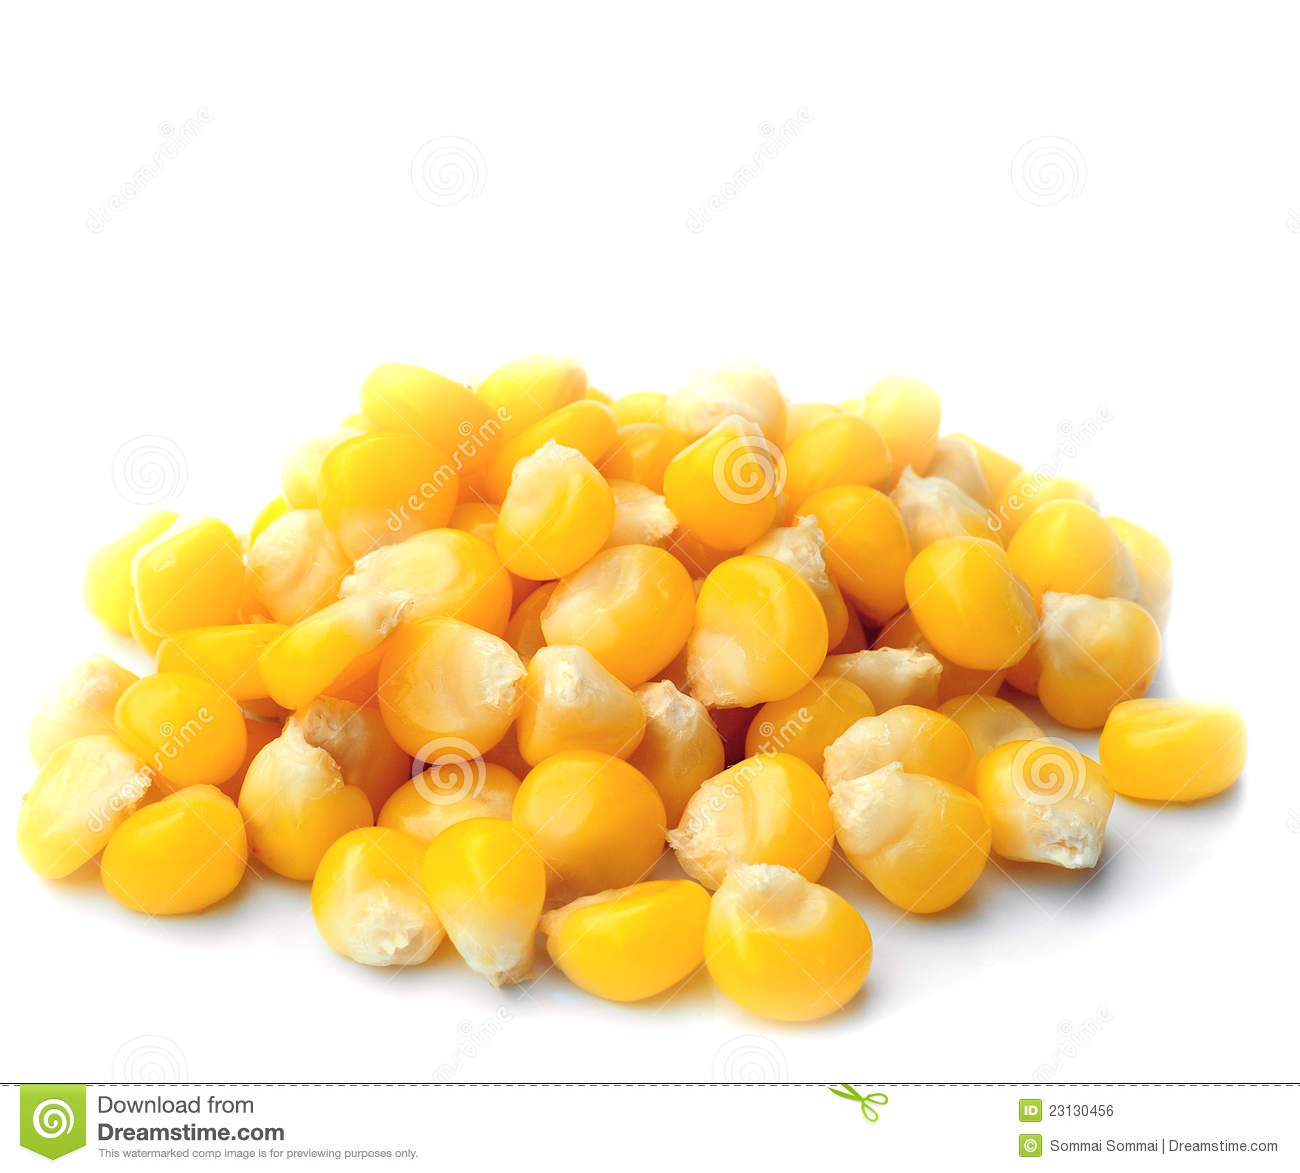 Sweet Whole Kernel Corn Royalty Free Stock Image   Image  23130456